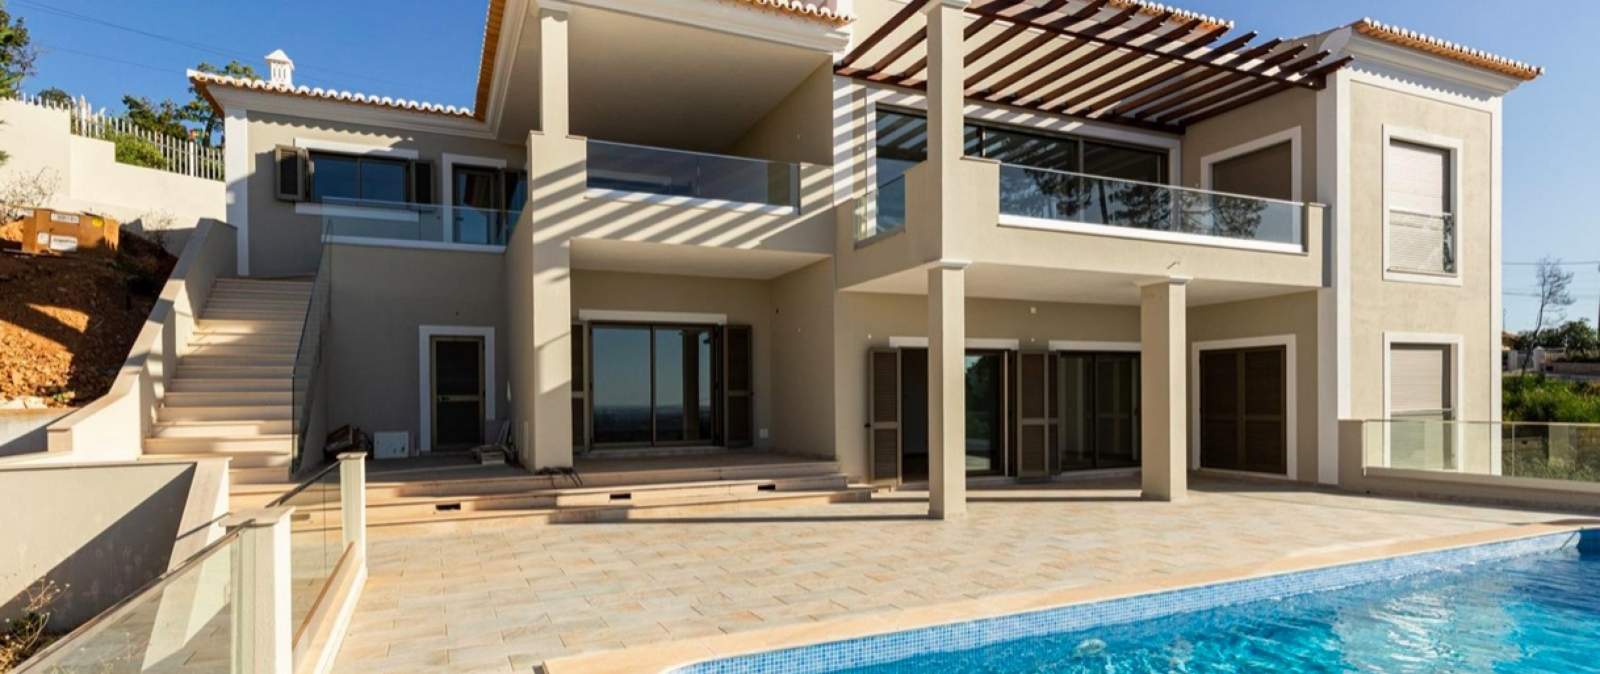 Casa de 4 dormitorios con piscina, de nueva construcción, en venta, Monchique, Algarve_191576